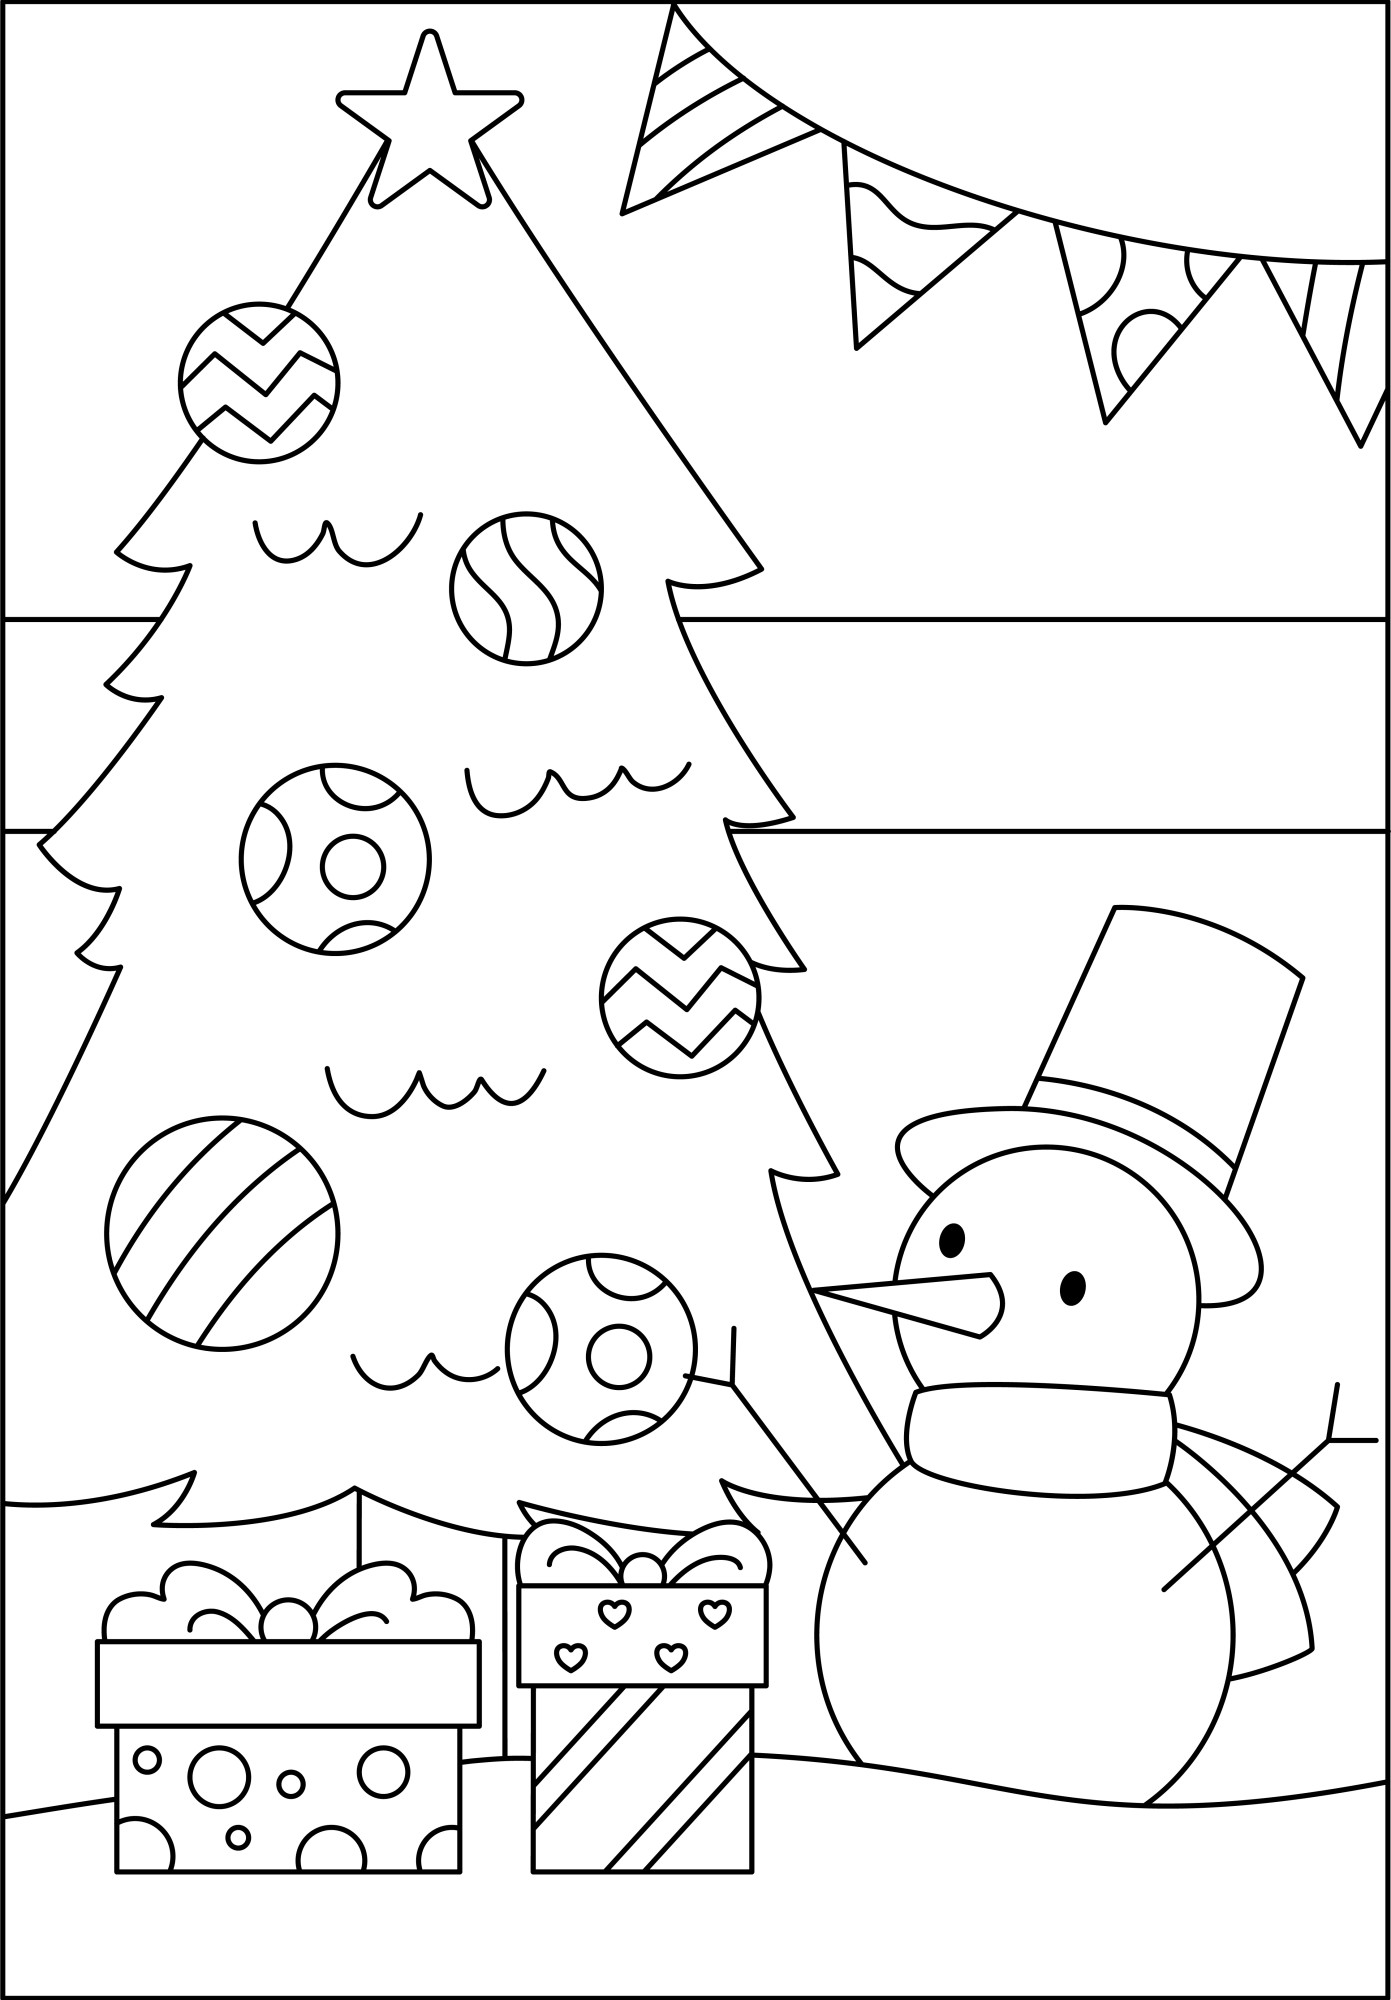 Раскраска для детей: новогодняя елка с большими новогодними шарами радом со снеговиком и подарками